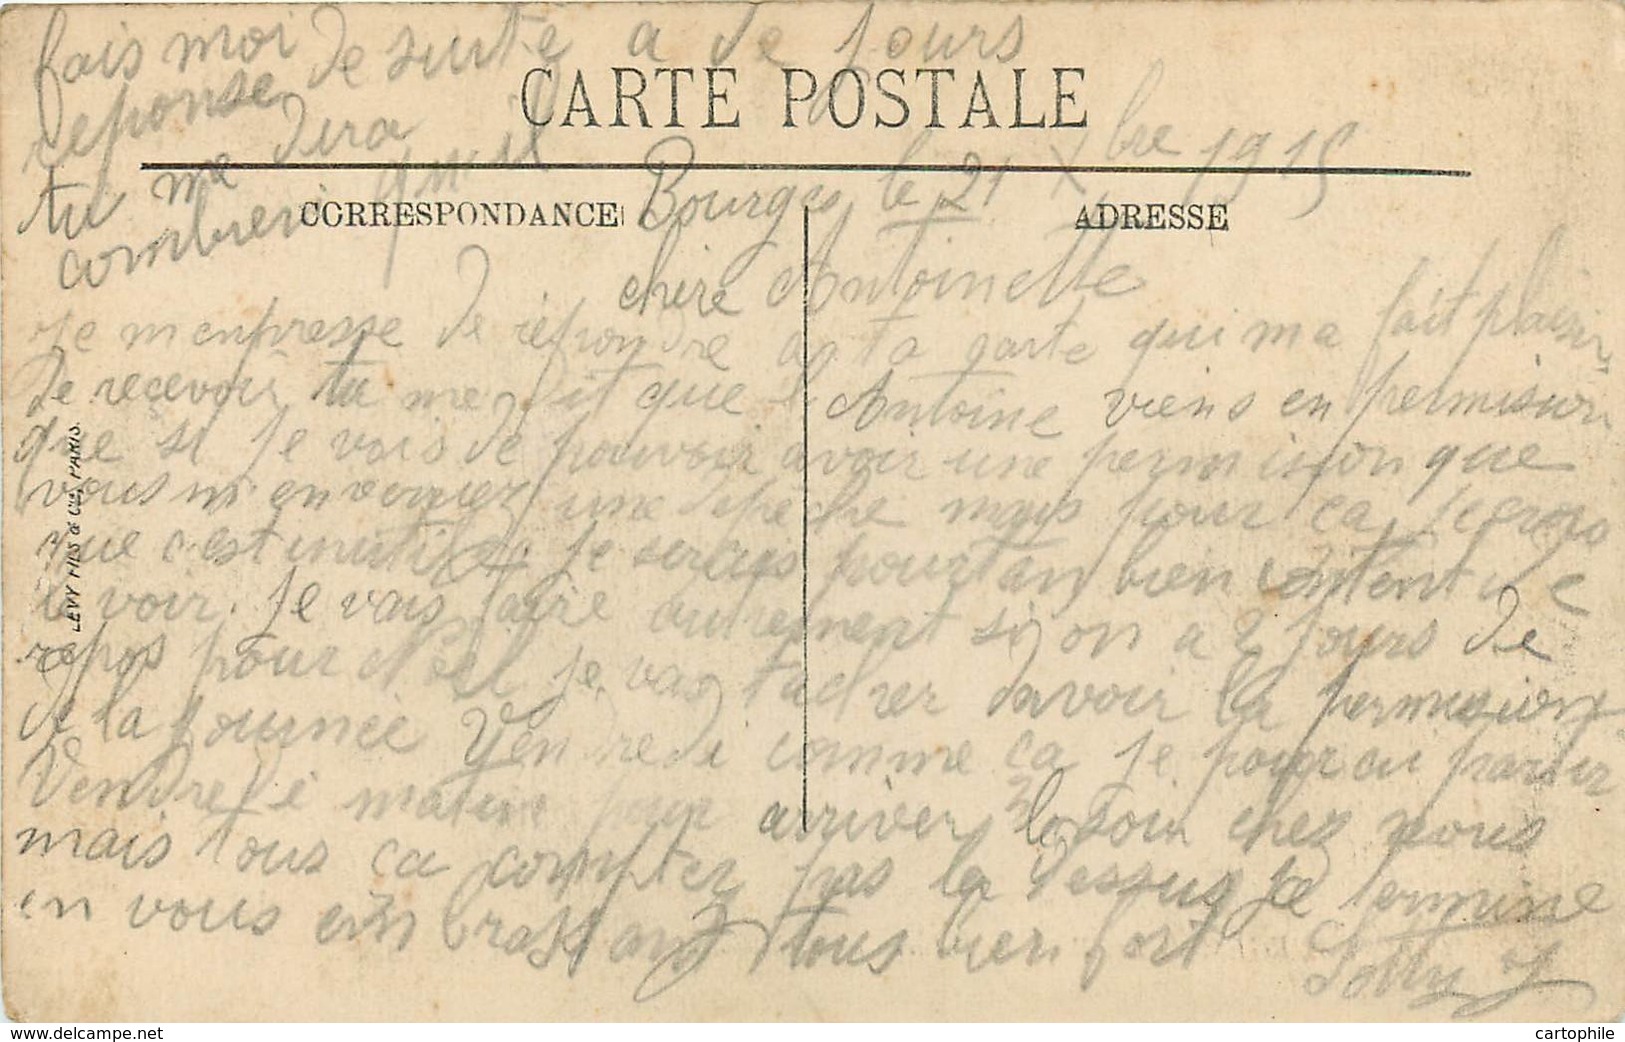 18 - LOT de 24 cpa de BOURGES écrites par le soldat Jean Sotty d'Oudry (71) de 1915 à 1918 en garnison au 1er RA